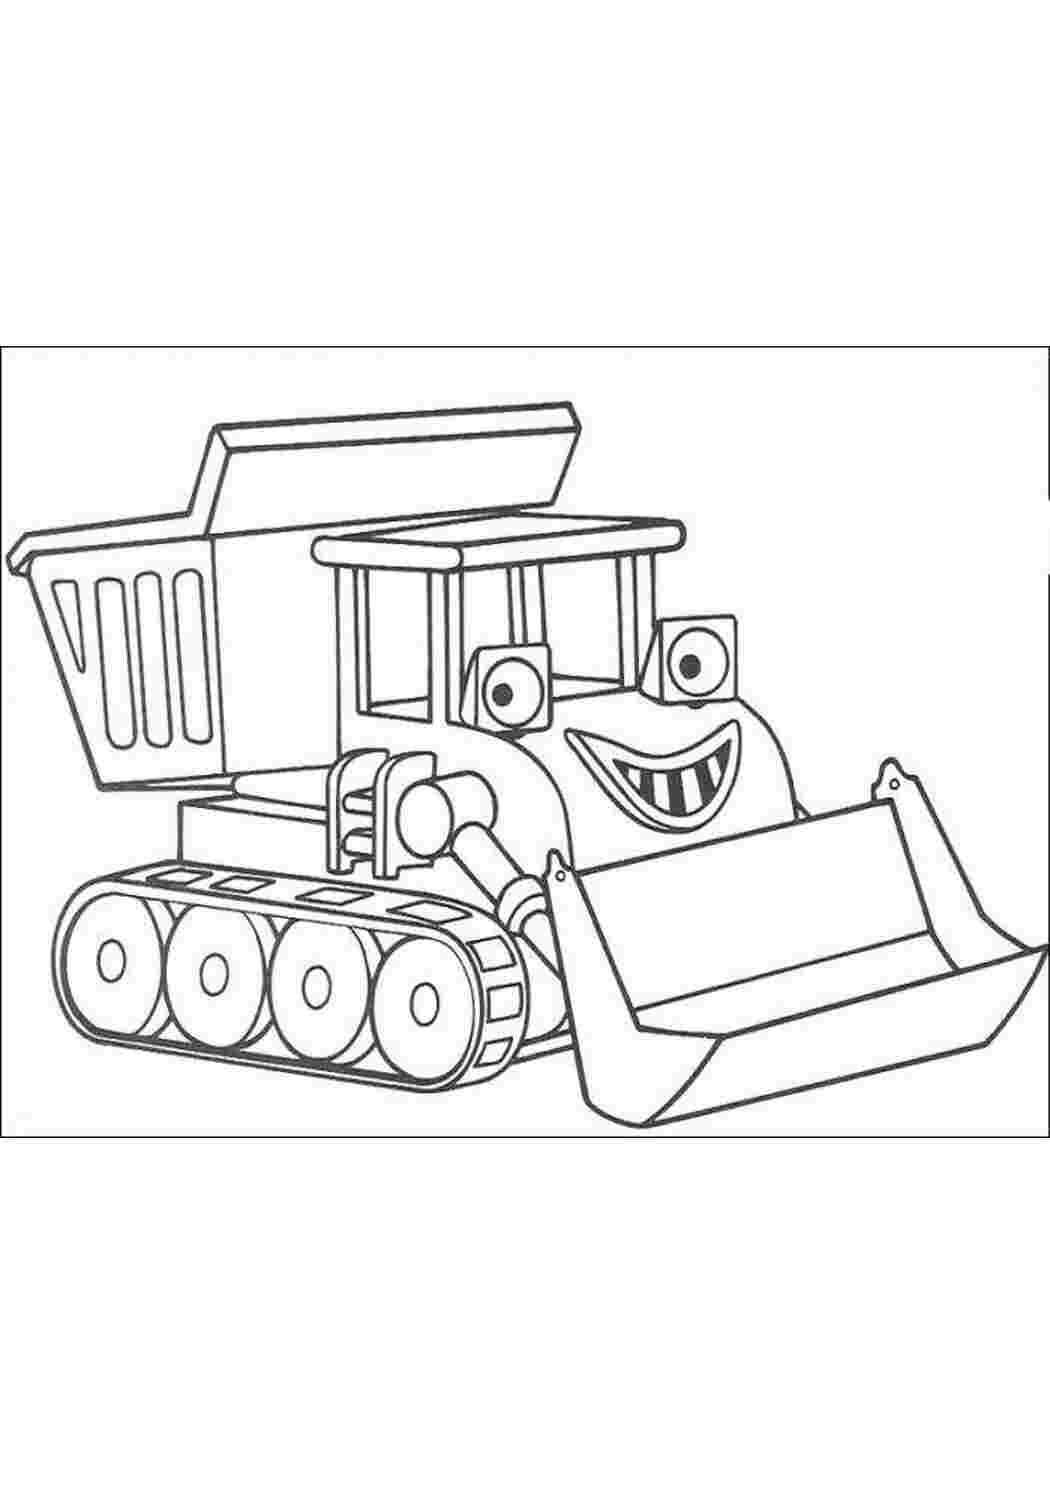 Раскраски картинки на рабочий стол онлайн Гусеничный трактор, грузовик, ковш, улыбка Раскраски для мальчиков